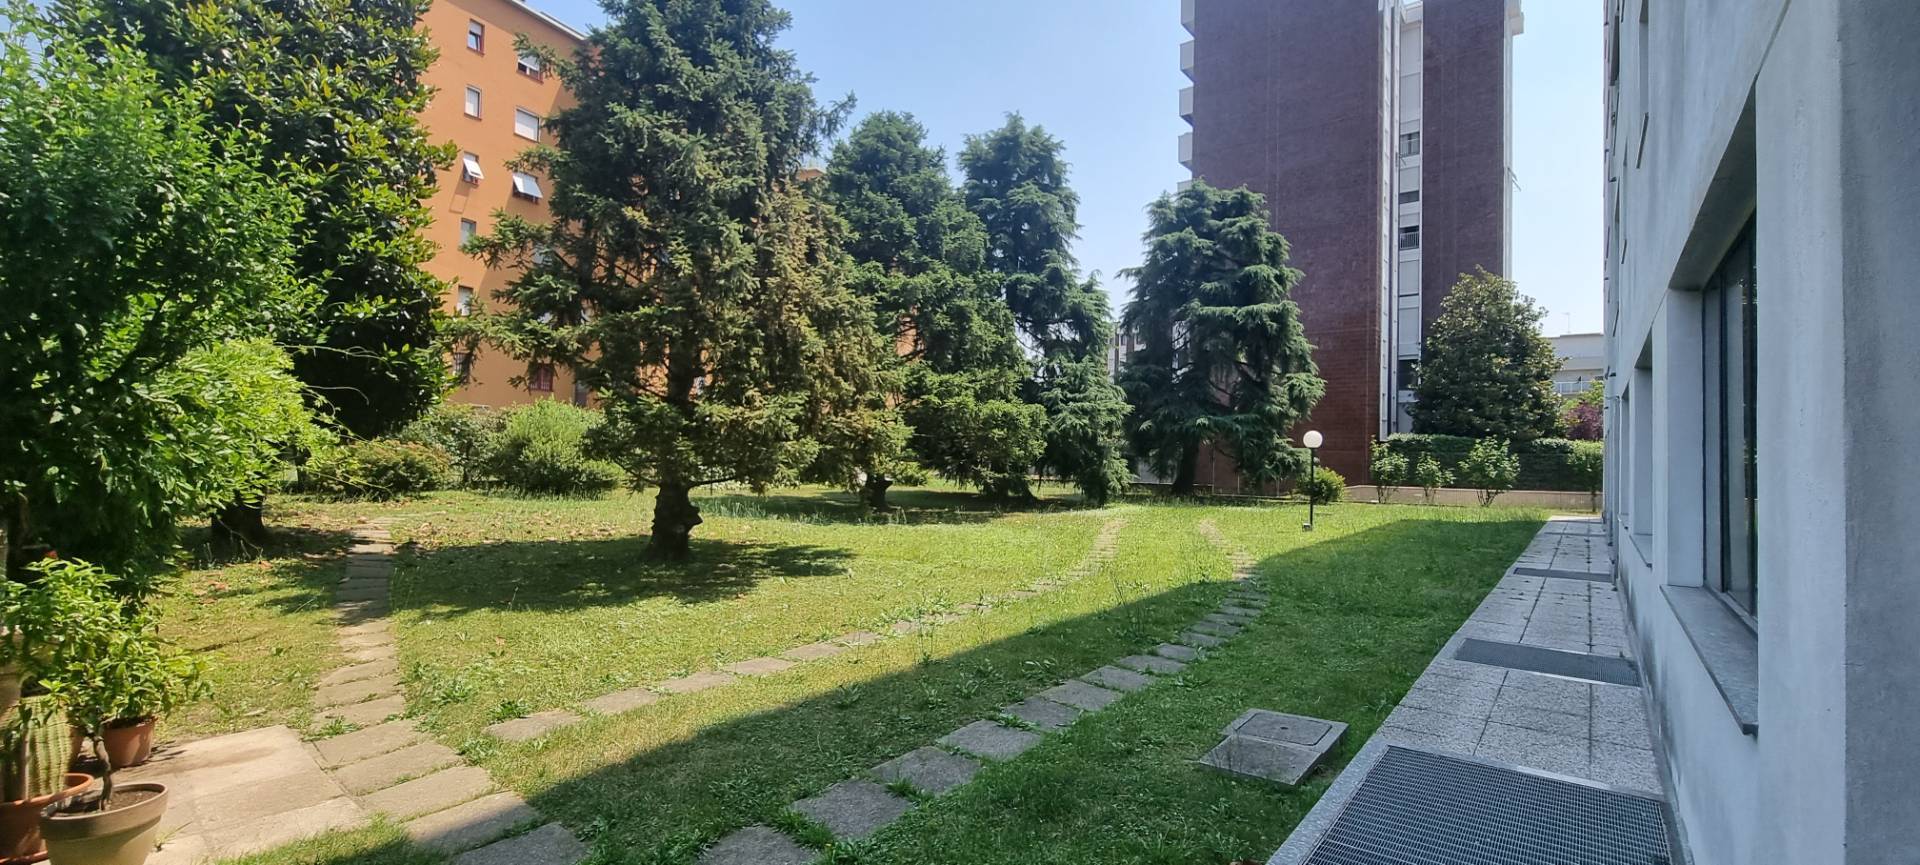 Appartamento - Certosa, Quarto Oggiaro, Villapizzone